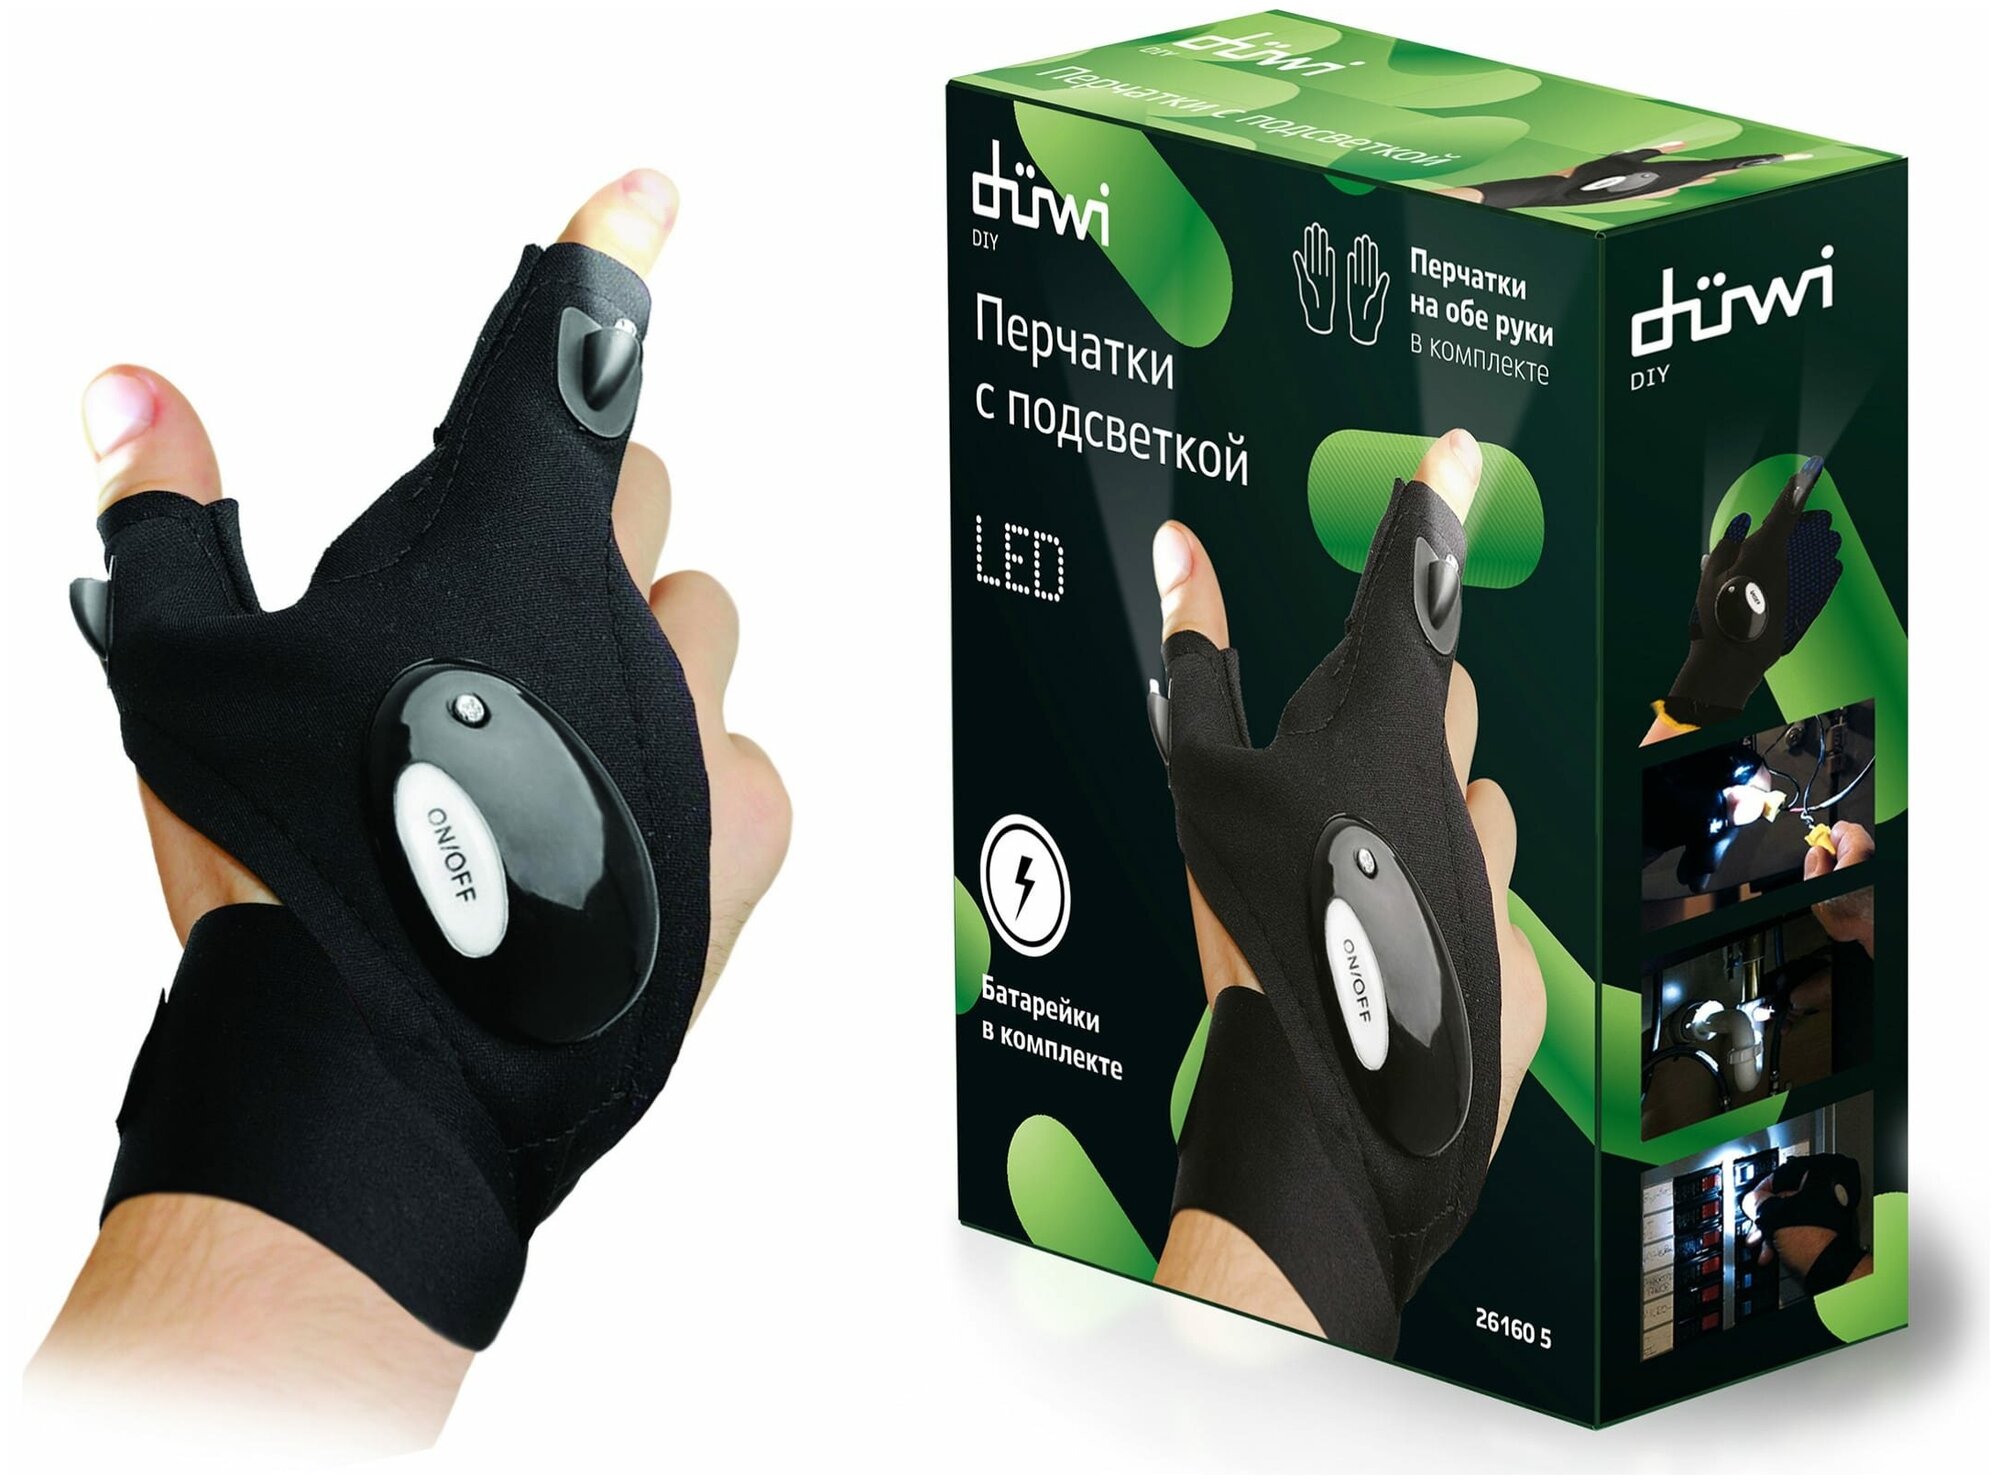 duwi Фонарь-перчатка со встроенной подсветкой, комплект 2 шт. на левую и правую руку, 26160 5 - фотография № 2